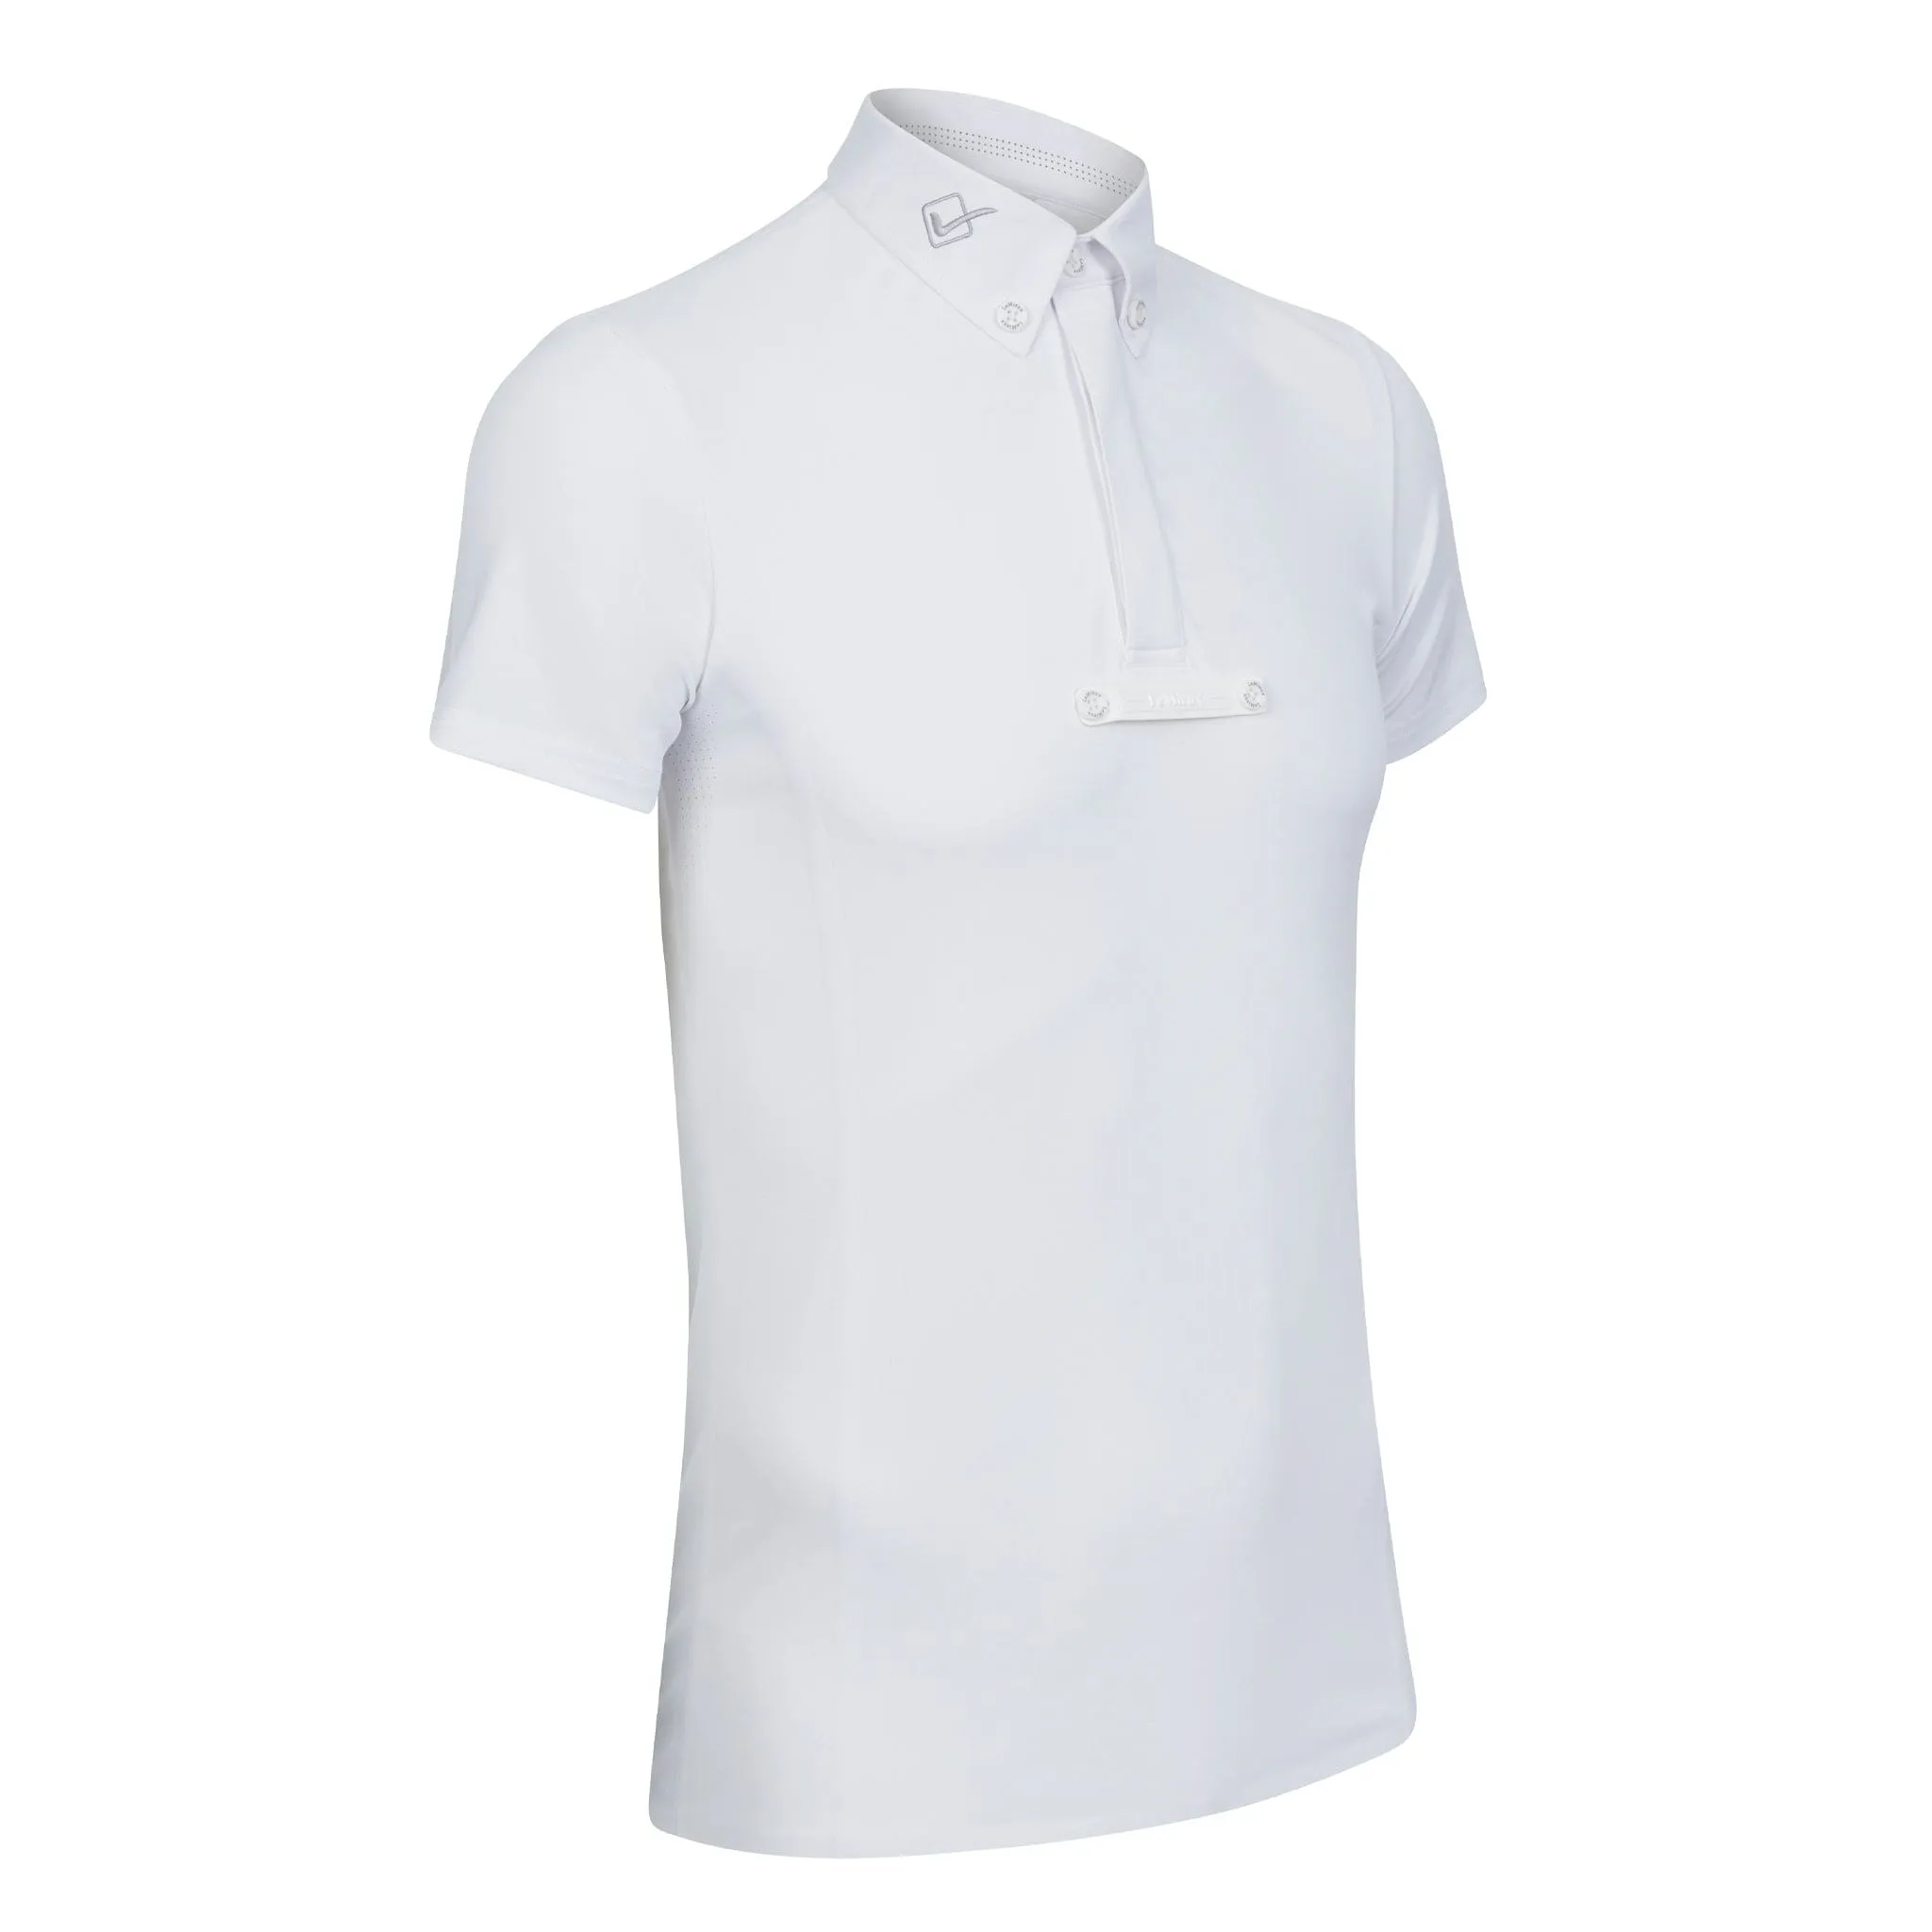 LeMieux Men's Monsieur Competition Shirt White